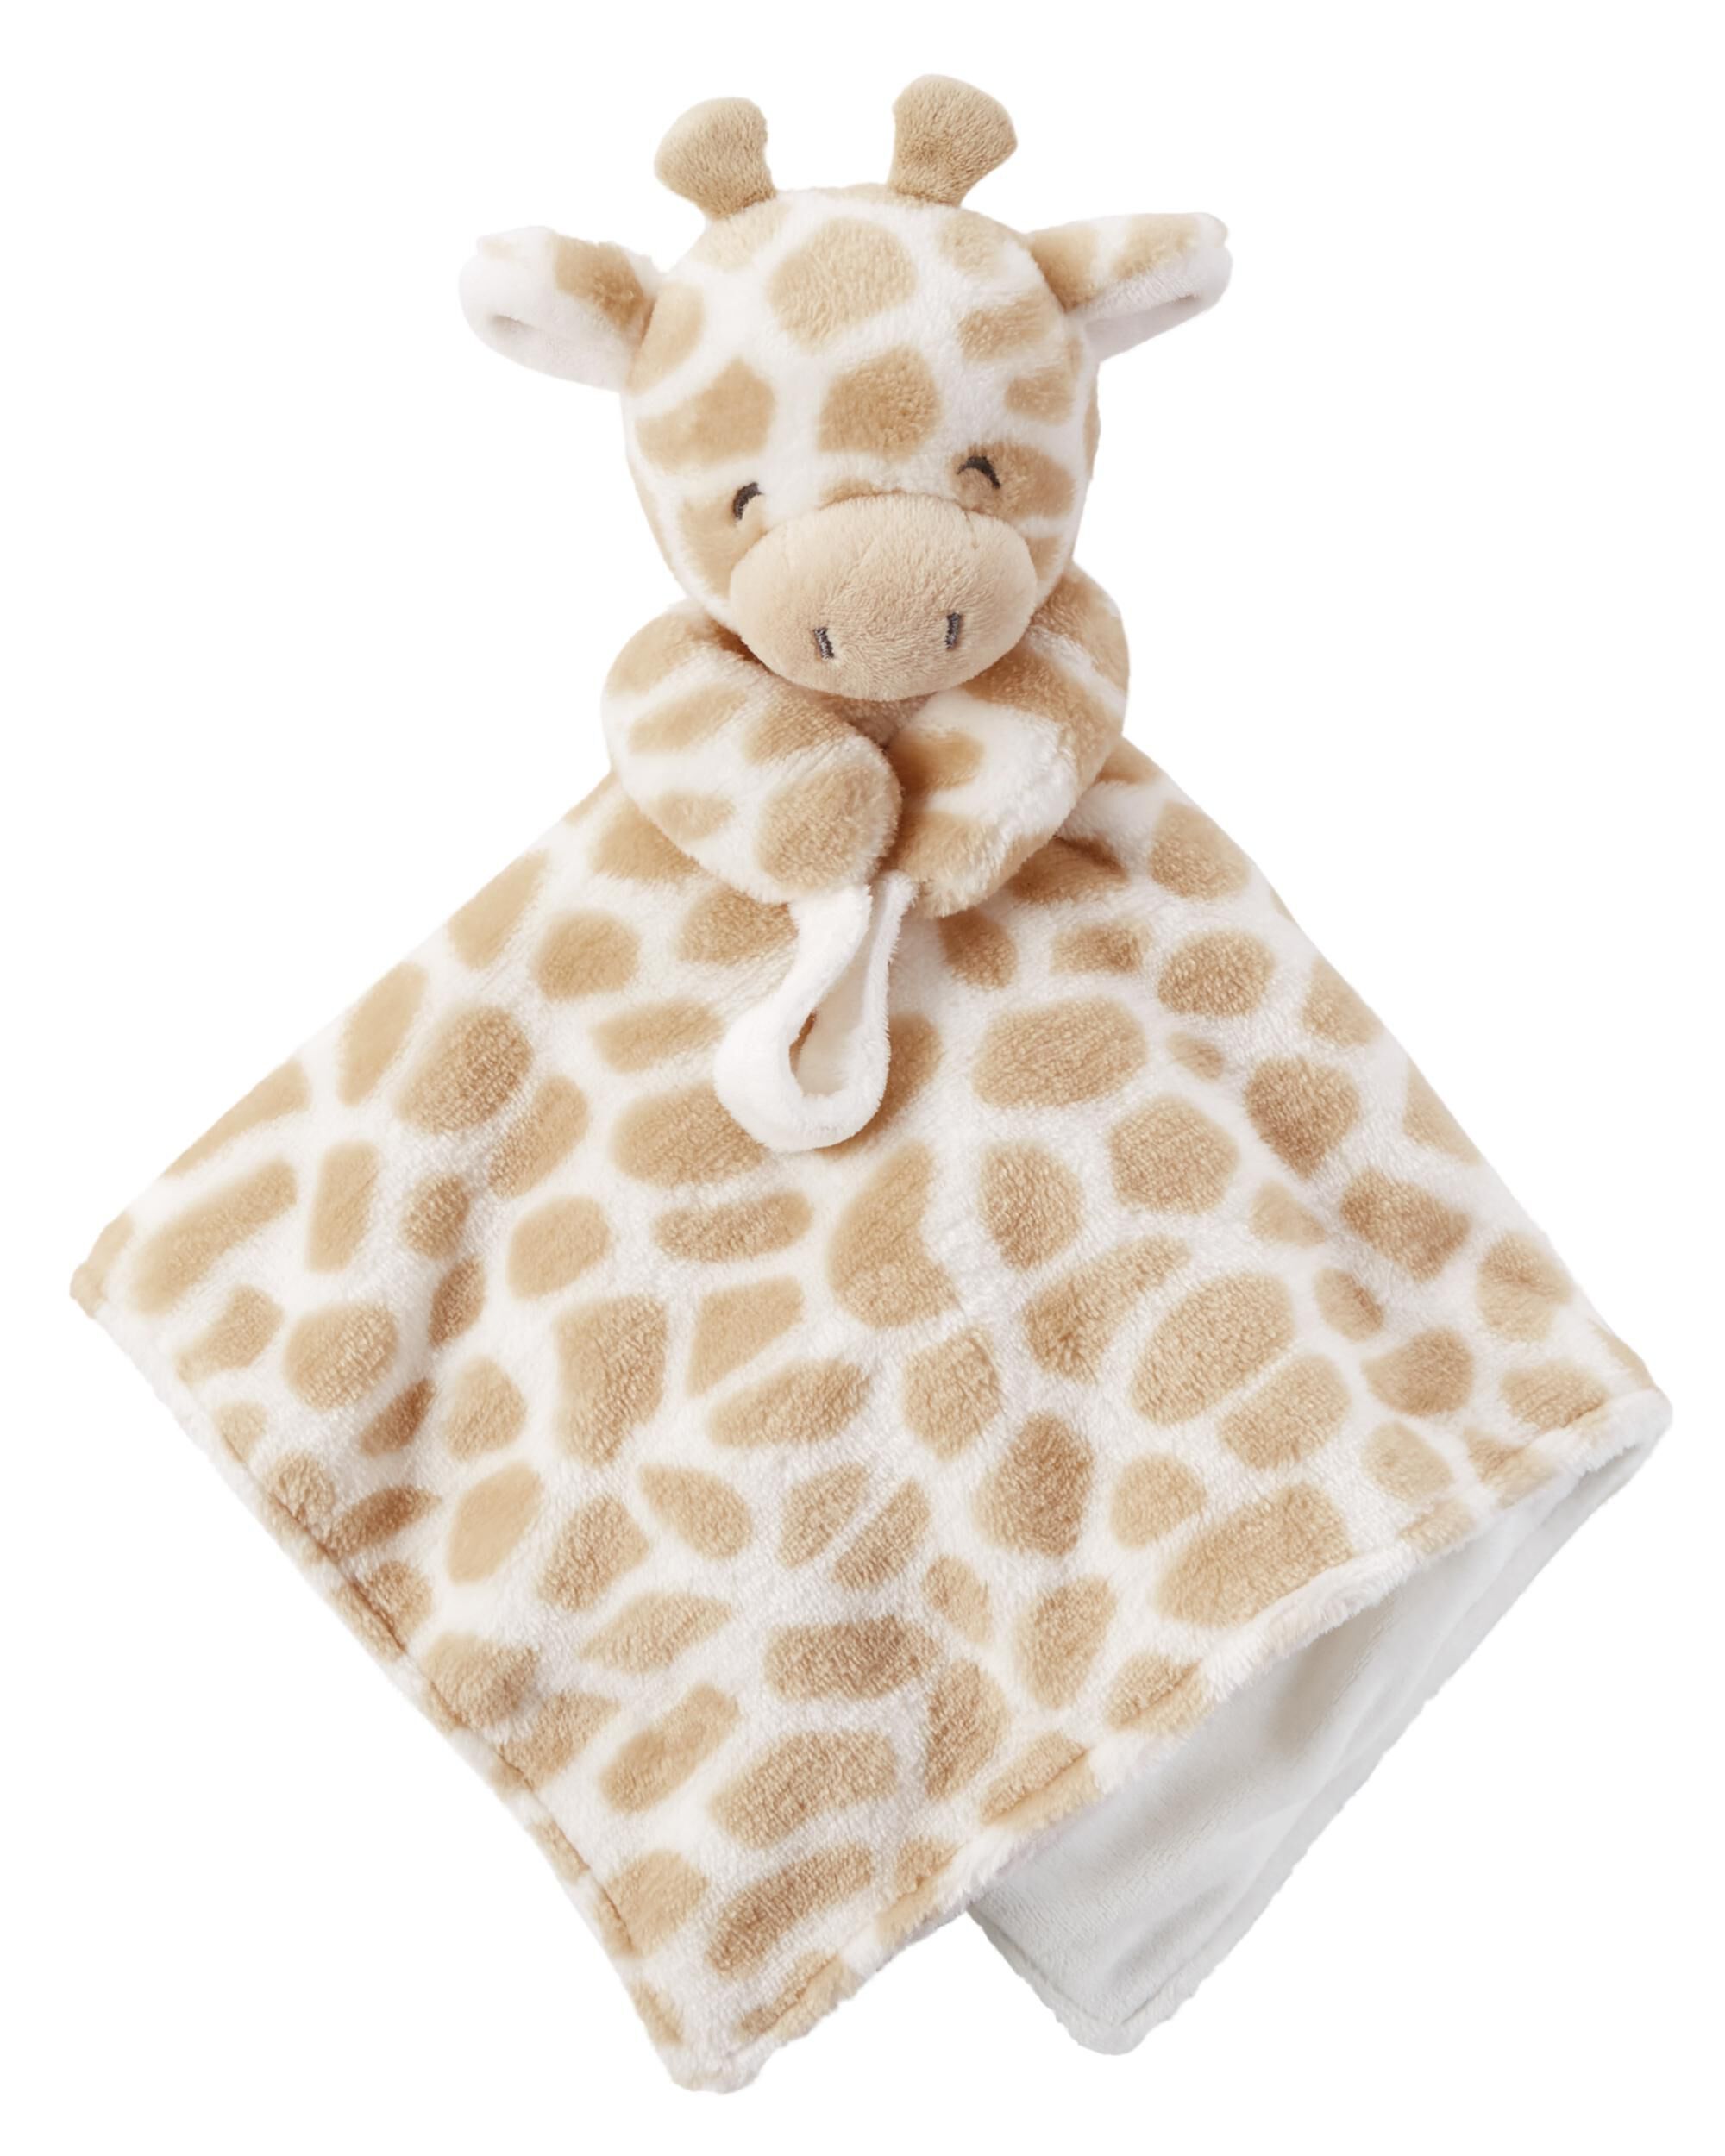 carter's giraffe plush